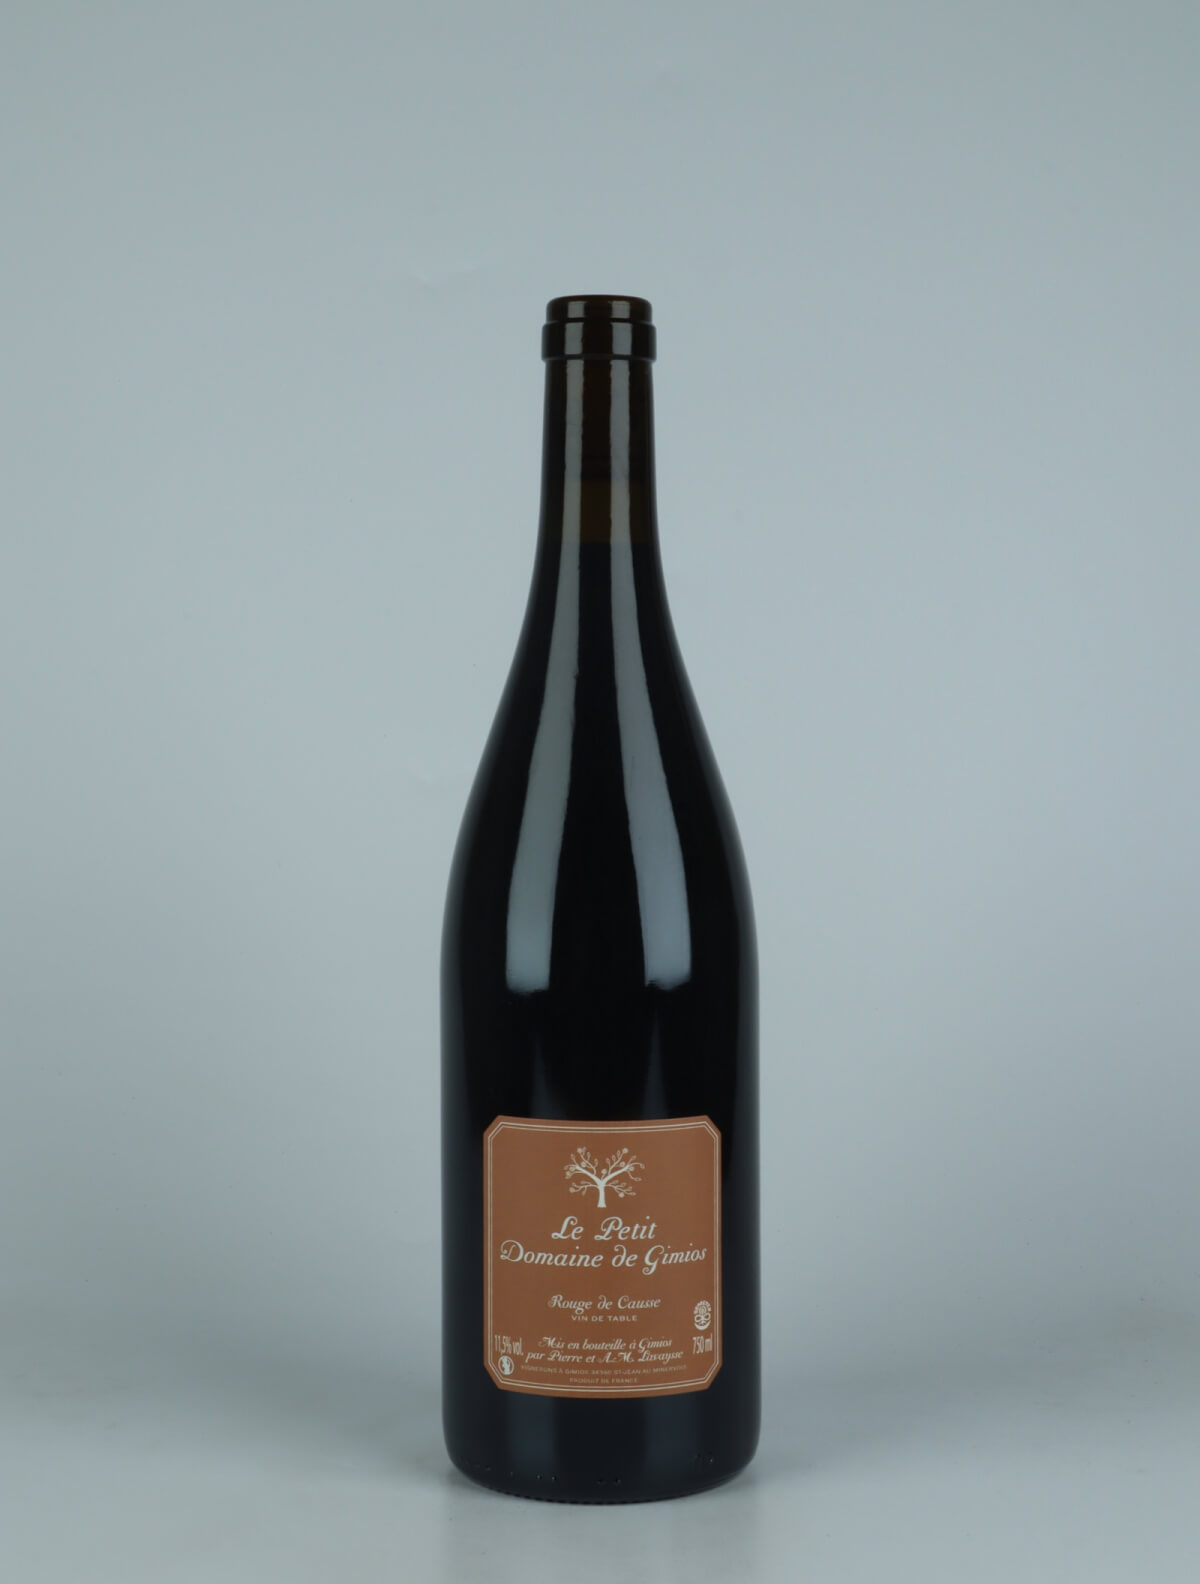 En flaske 2022 Rouge de Causse Rødvin fra Le Petit Domaine de Gimios, Rousillon i Frankrig